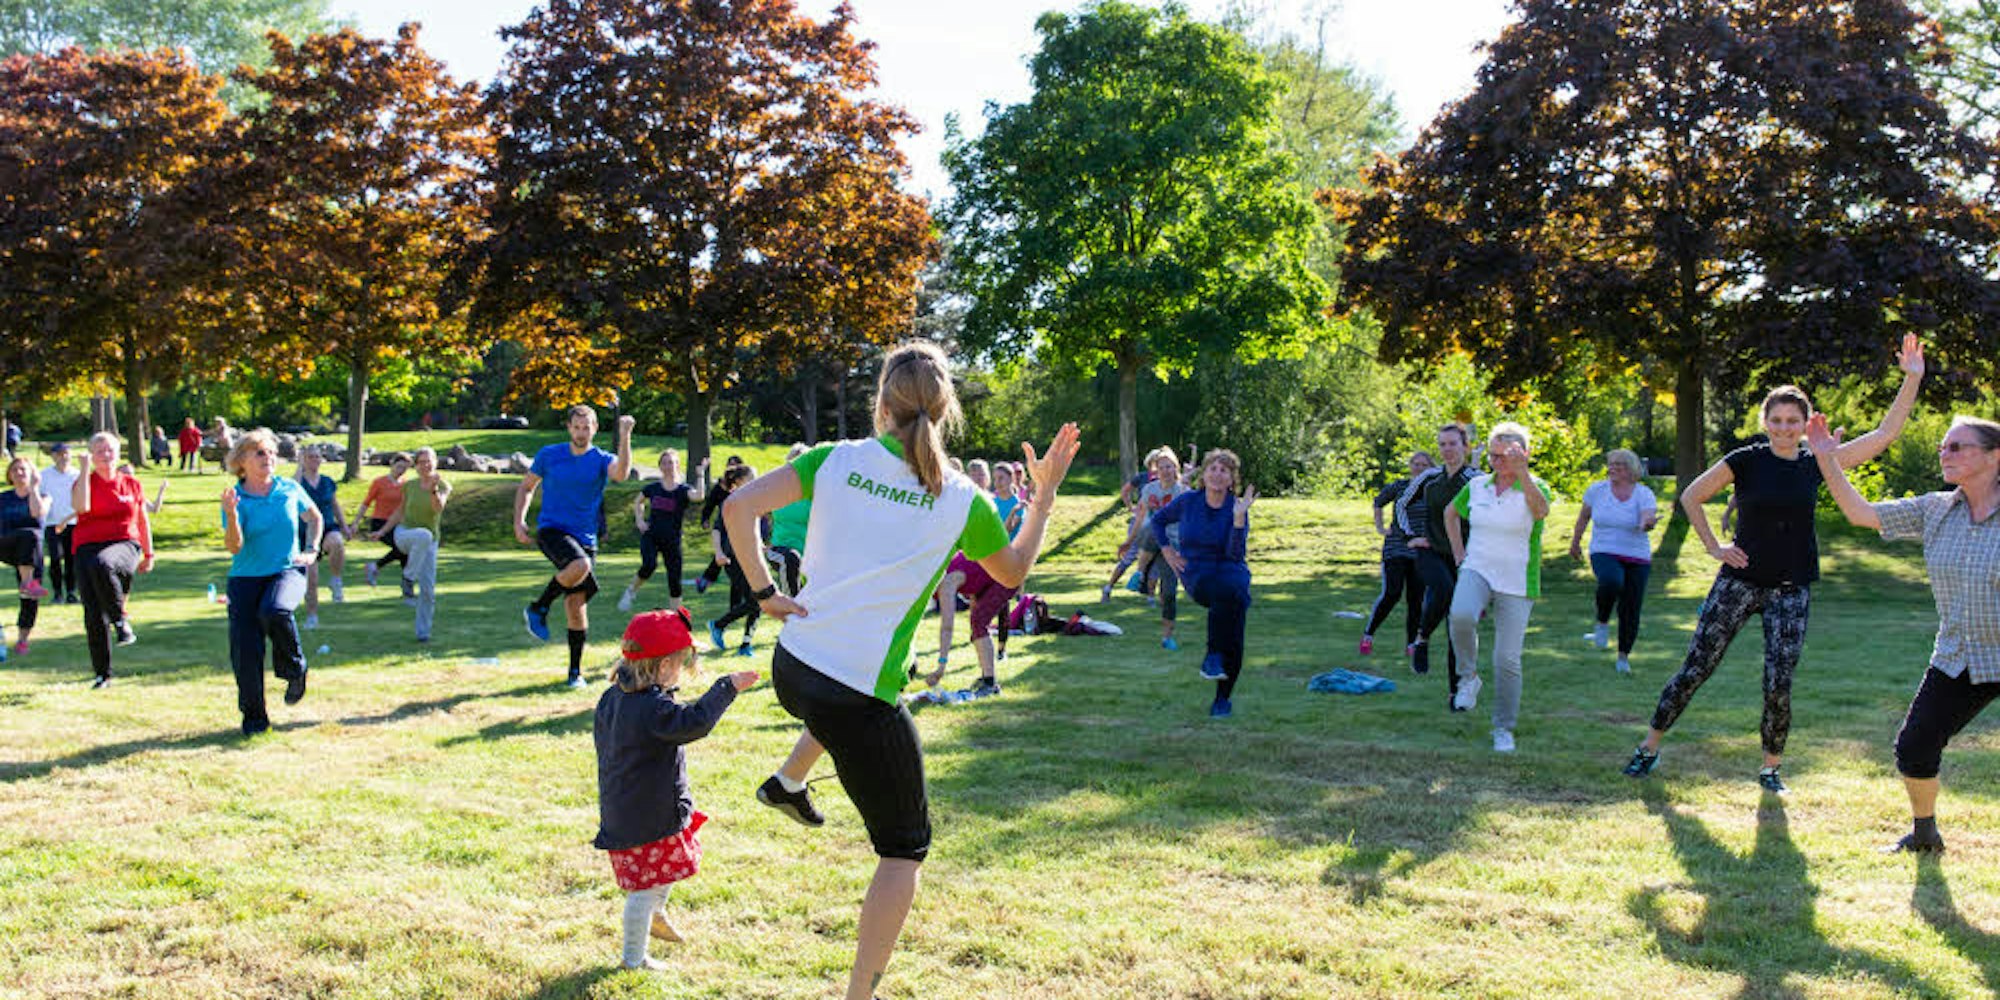 Rund 50 Menschen, die Freude und Spaß an der Bewegung unter freiem Himmel haben, kamen zum Auftakt von „Sport im Park“ in Rheinbach.